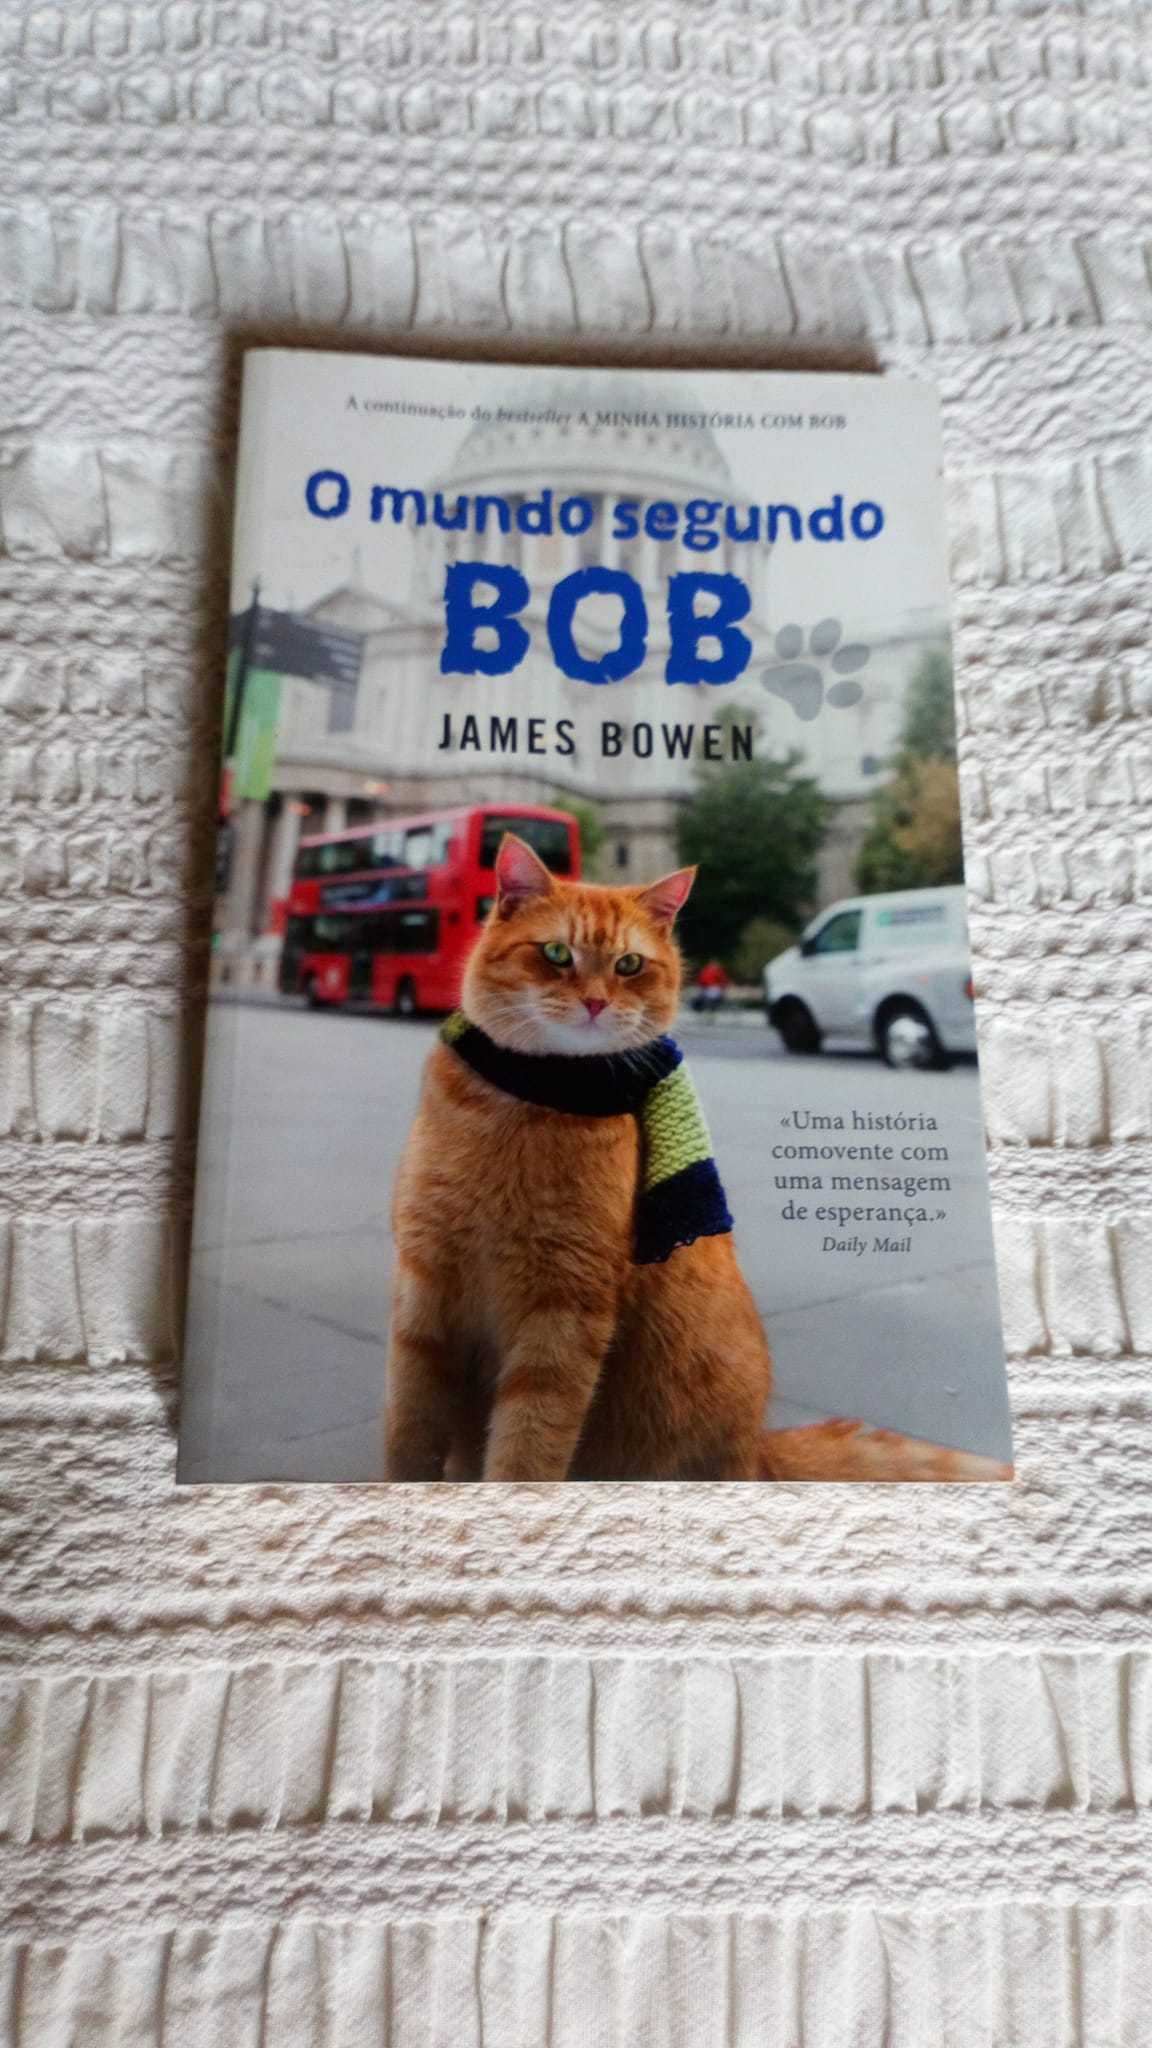 Vendo livro sobre a vida dos gatos